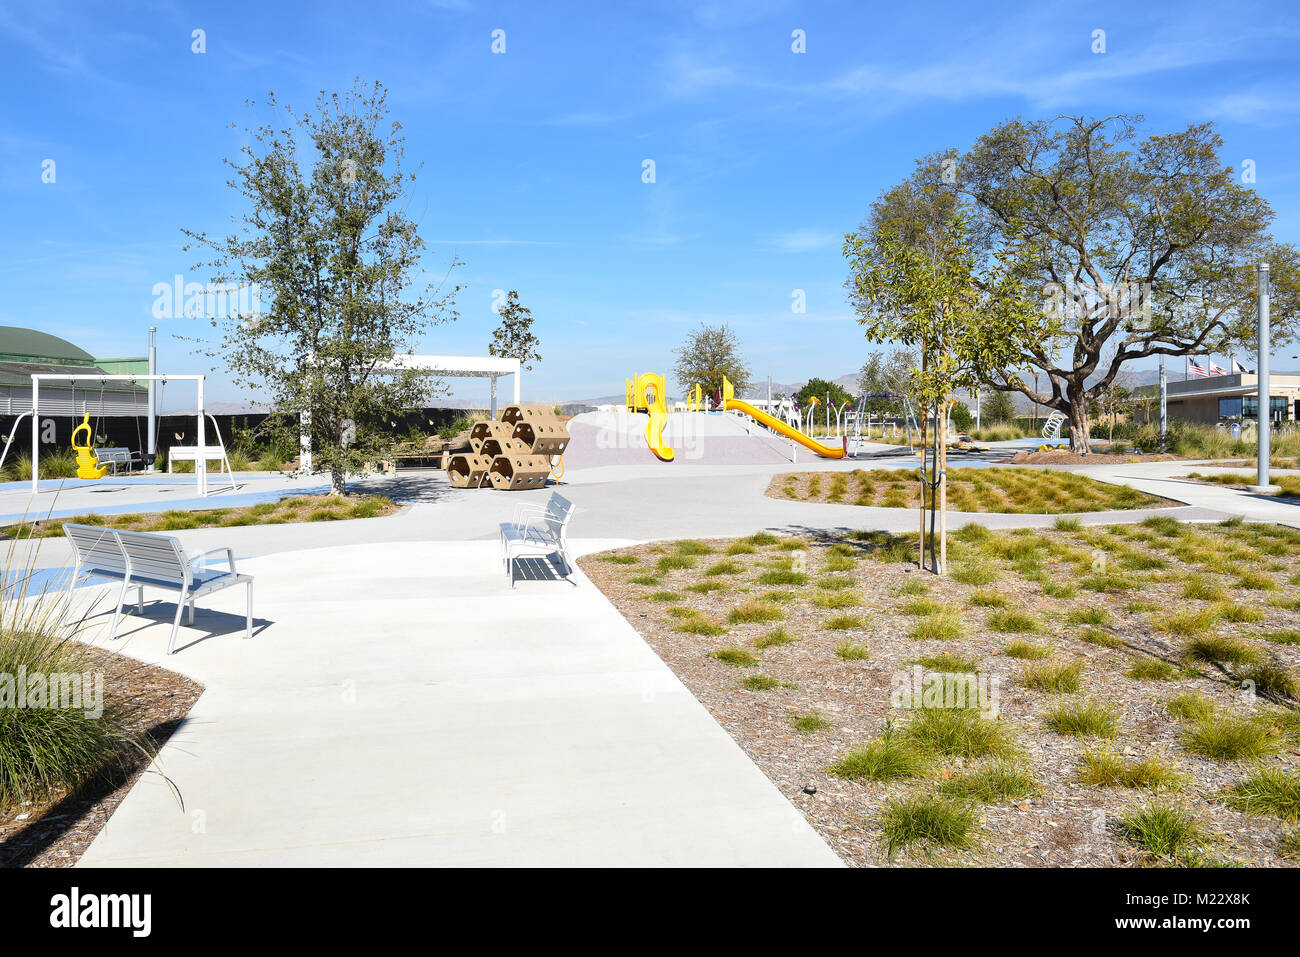 IRVINE, CALIFORNIE - Le 2 février 2018 : l'aire de jeux dans le Grand Parc. La zone est adjacente à la complexe de tennis. Banque D'Images